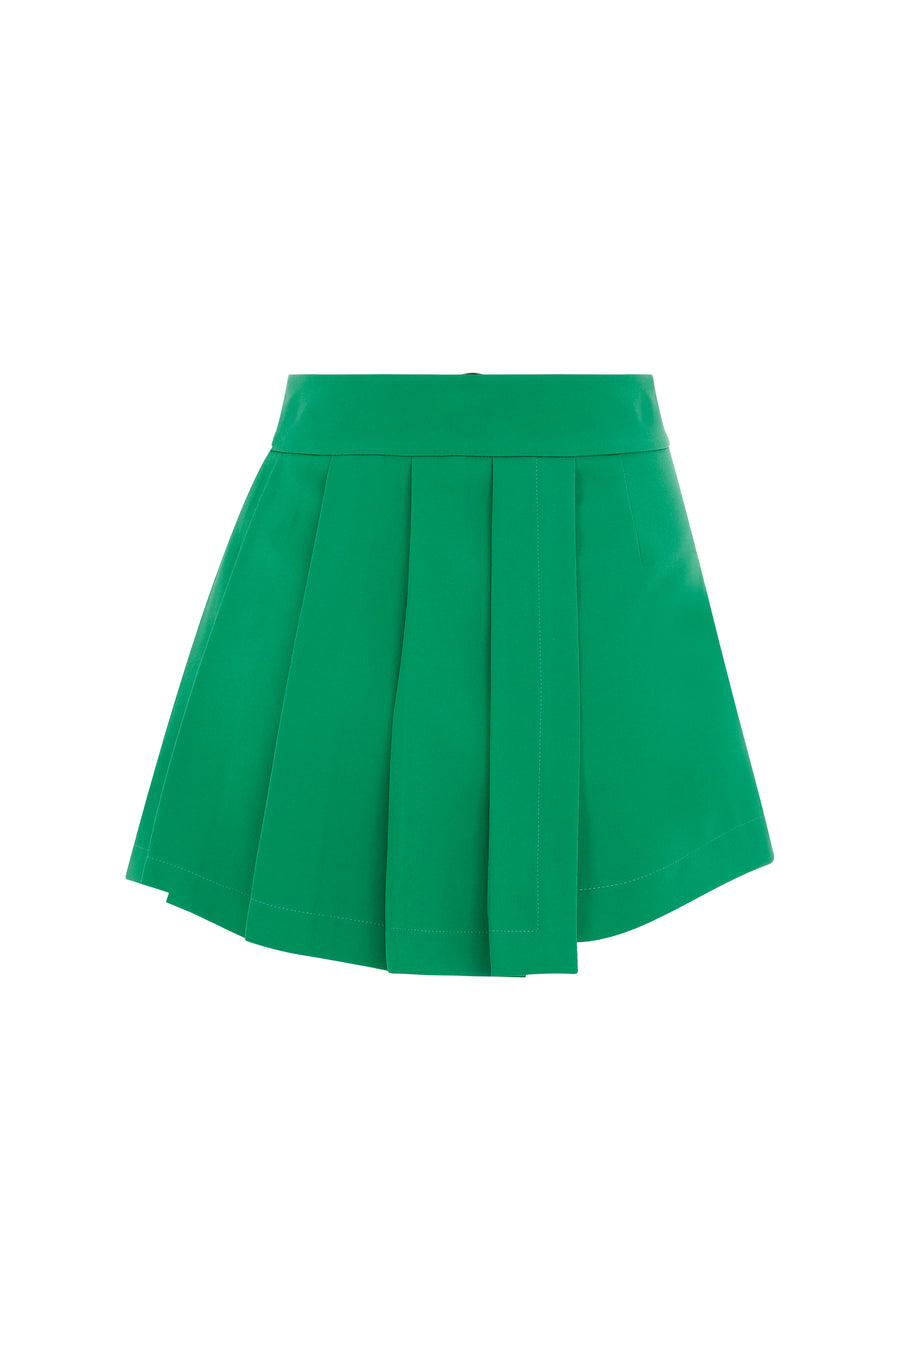 Glam Skirt